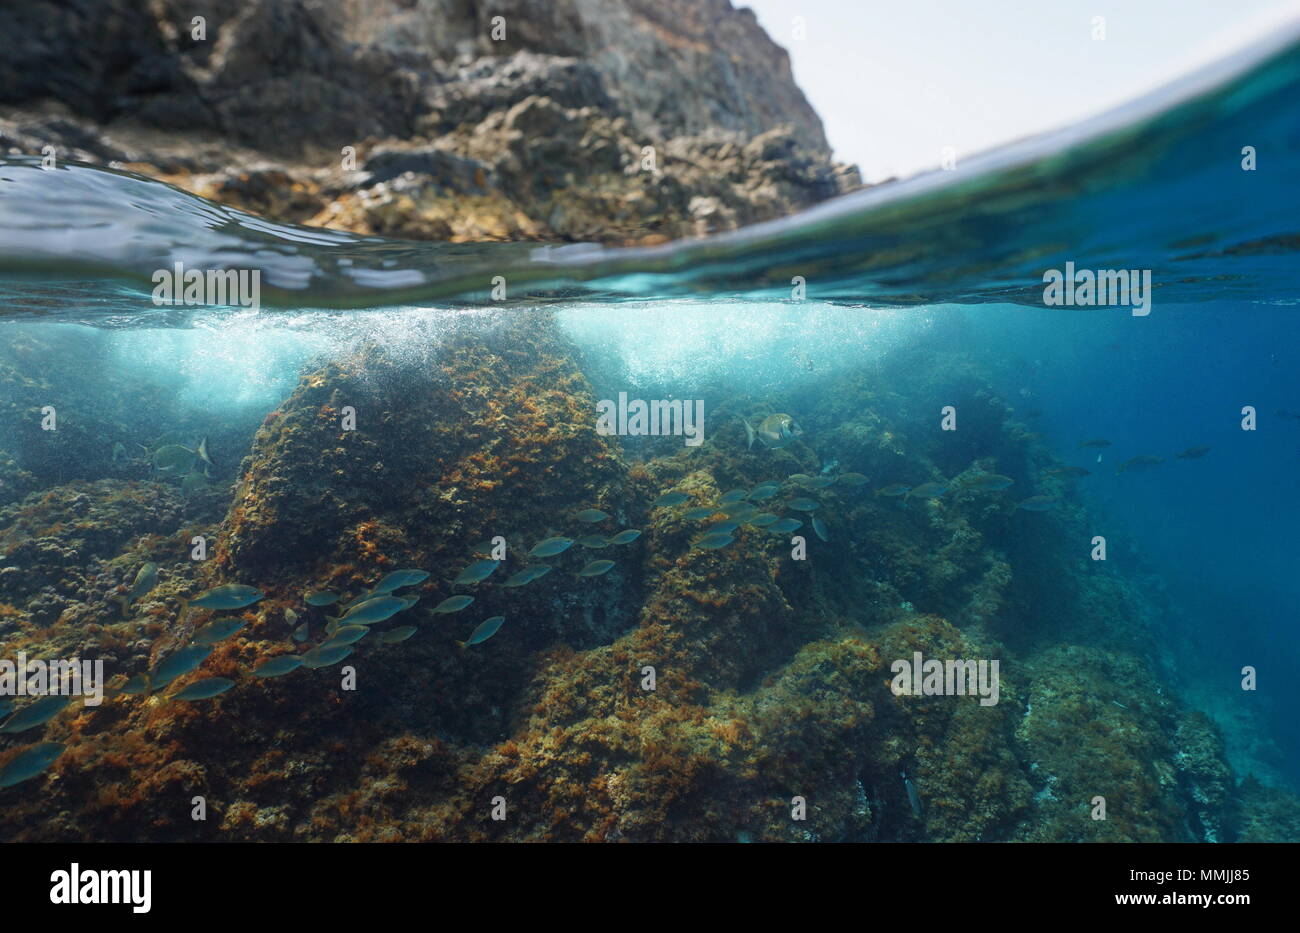 Mittelmeer felsigen Ufer der geteilten Ansicht oberhalb und unterhalb der Wasseroberfläche mit einer Schule von Fischen unter Wasser, Pyrenees Orientales, Frankreich Stockfoto